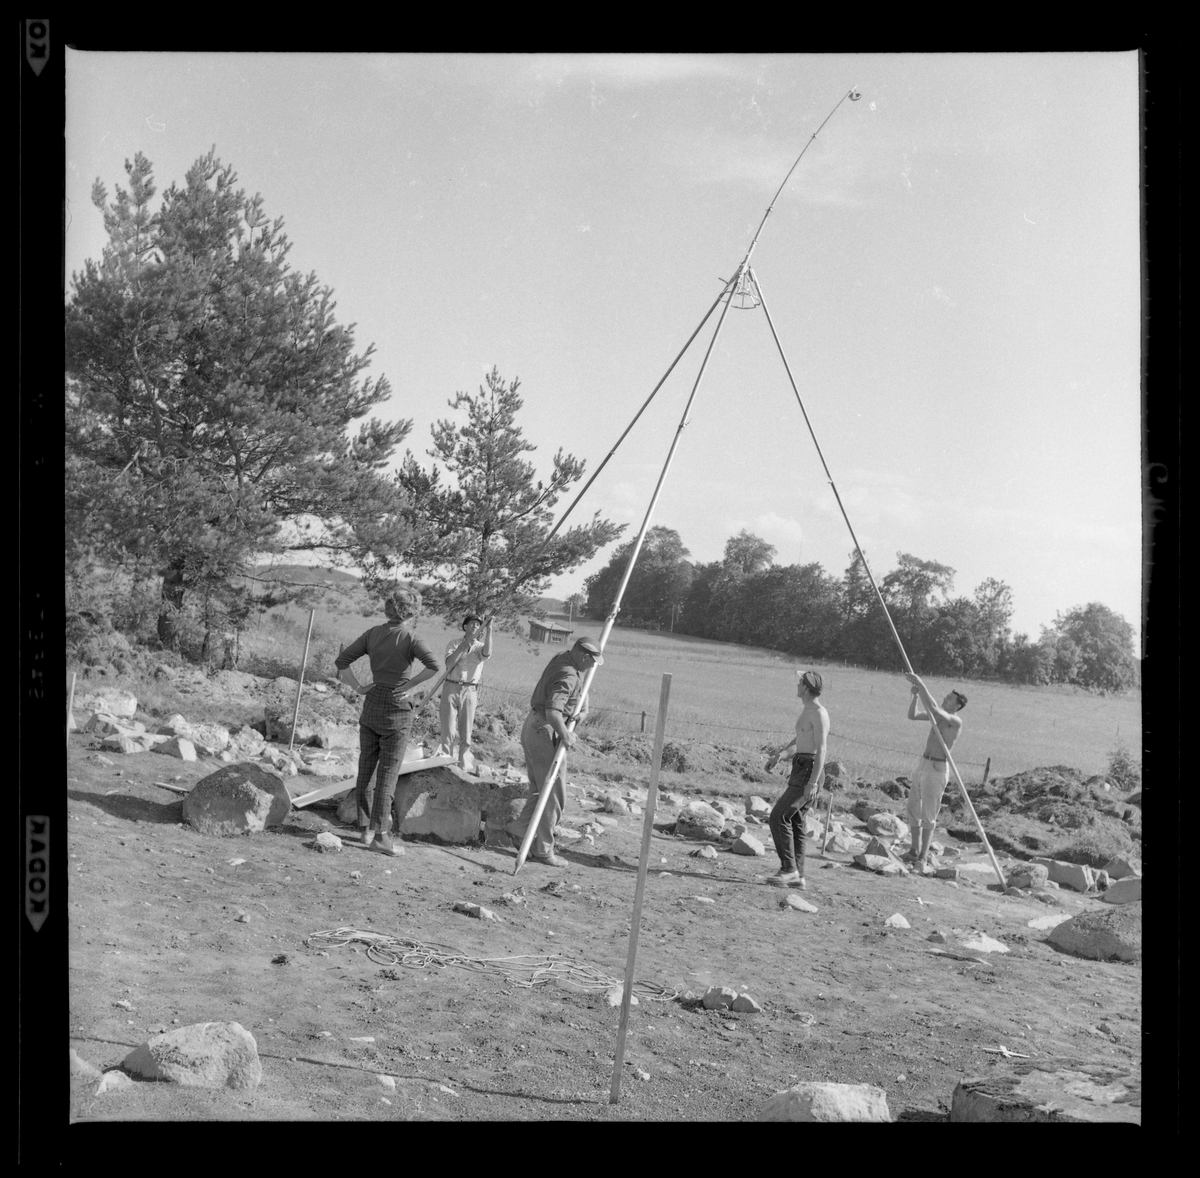 Svedvi sn Rallsta RAÄ 16 Arkeologisk undersökning utförd av Vlm / Henry Simonsson 1960-61.

Resning av fototorn.